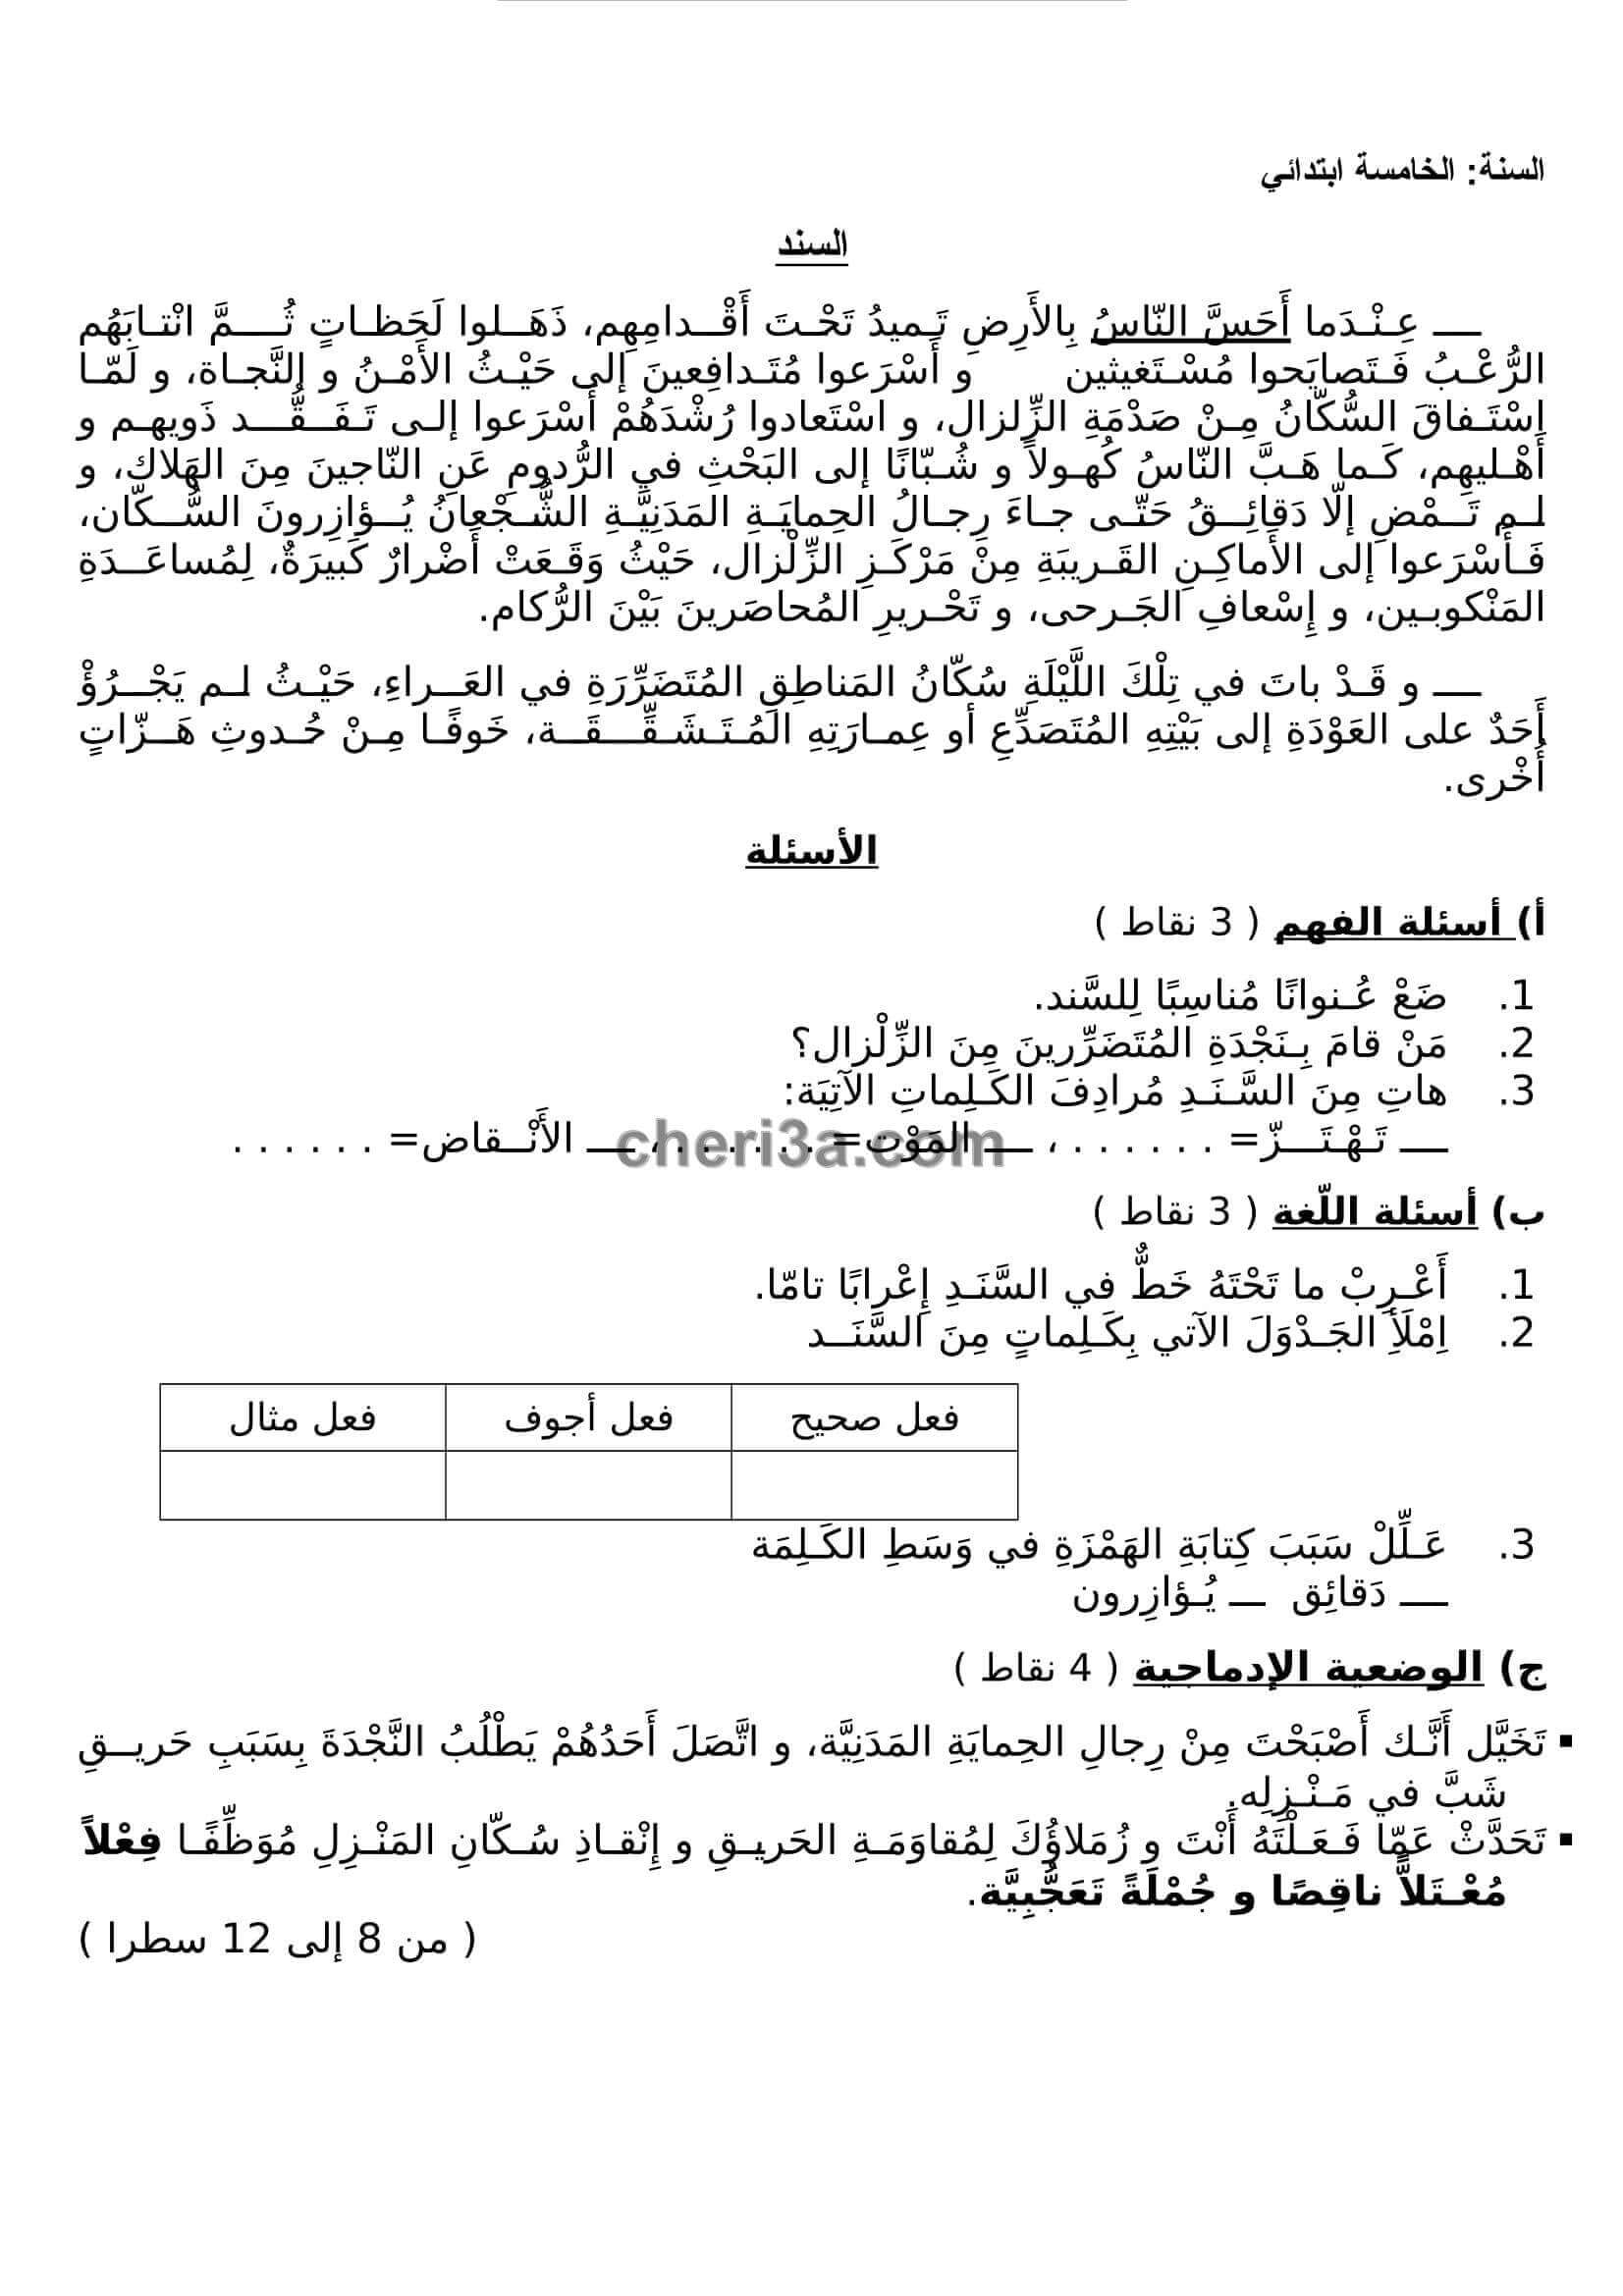 اختبار الفصل الاول للسنة الخامسة ابتدائي في مادة اللغة العربية النموذج 3